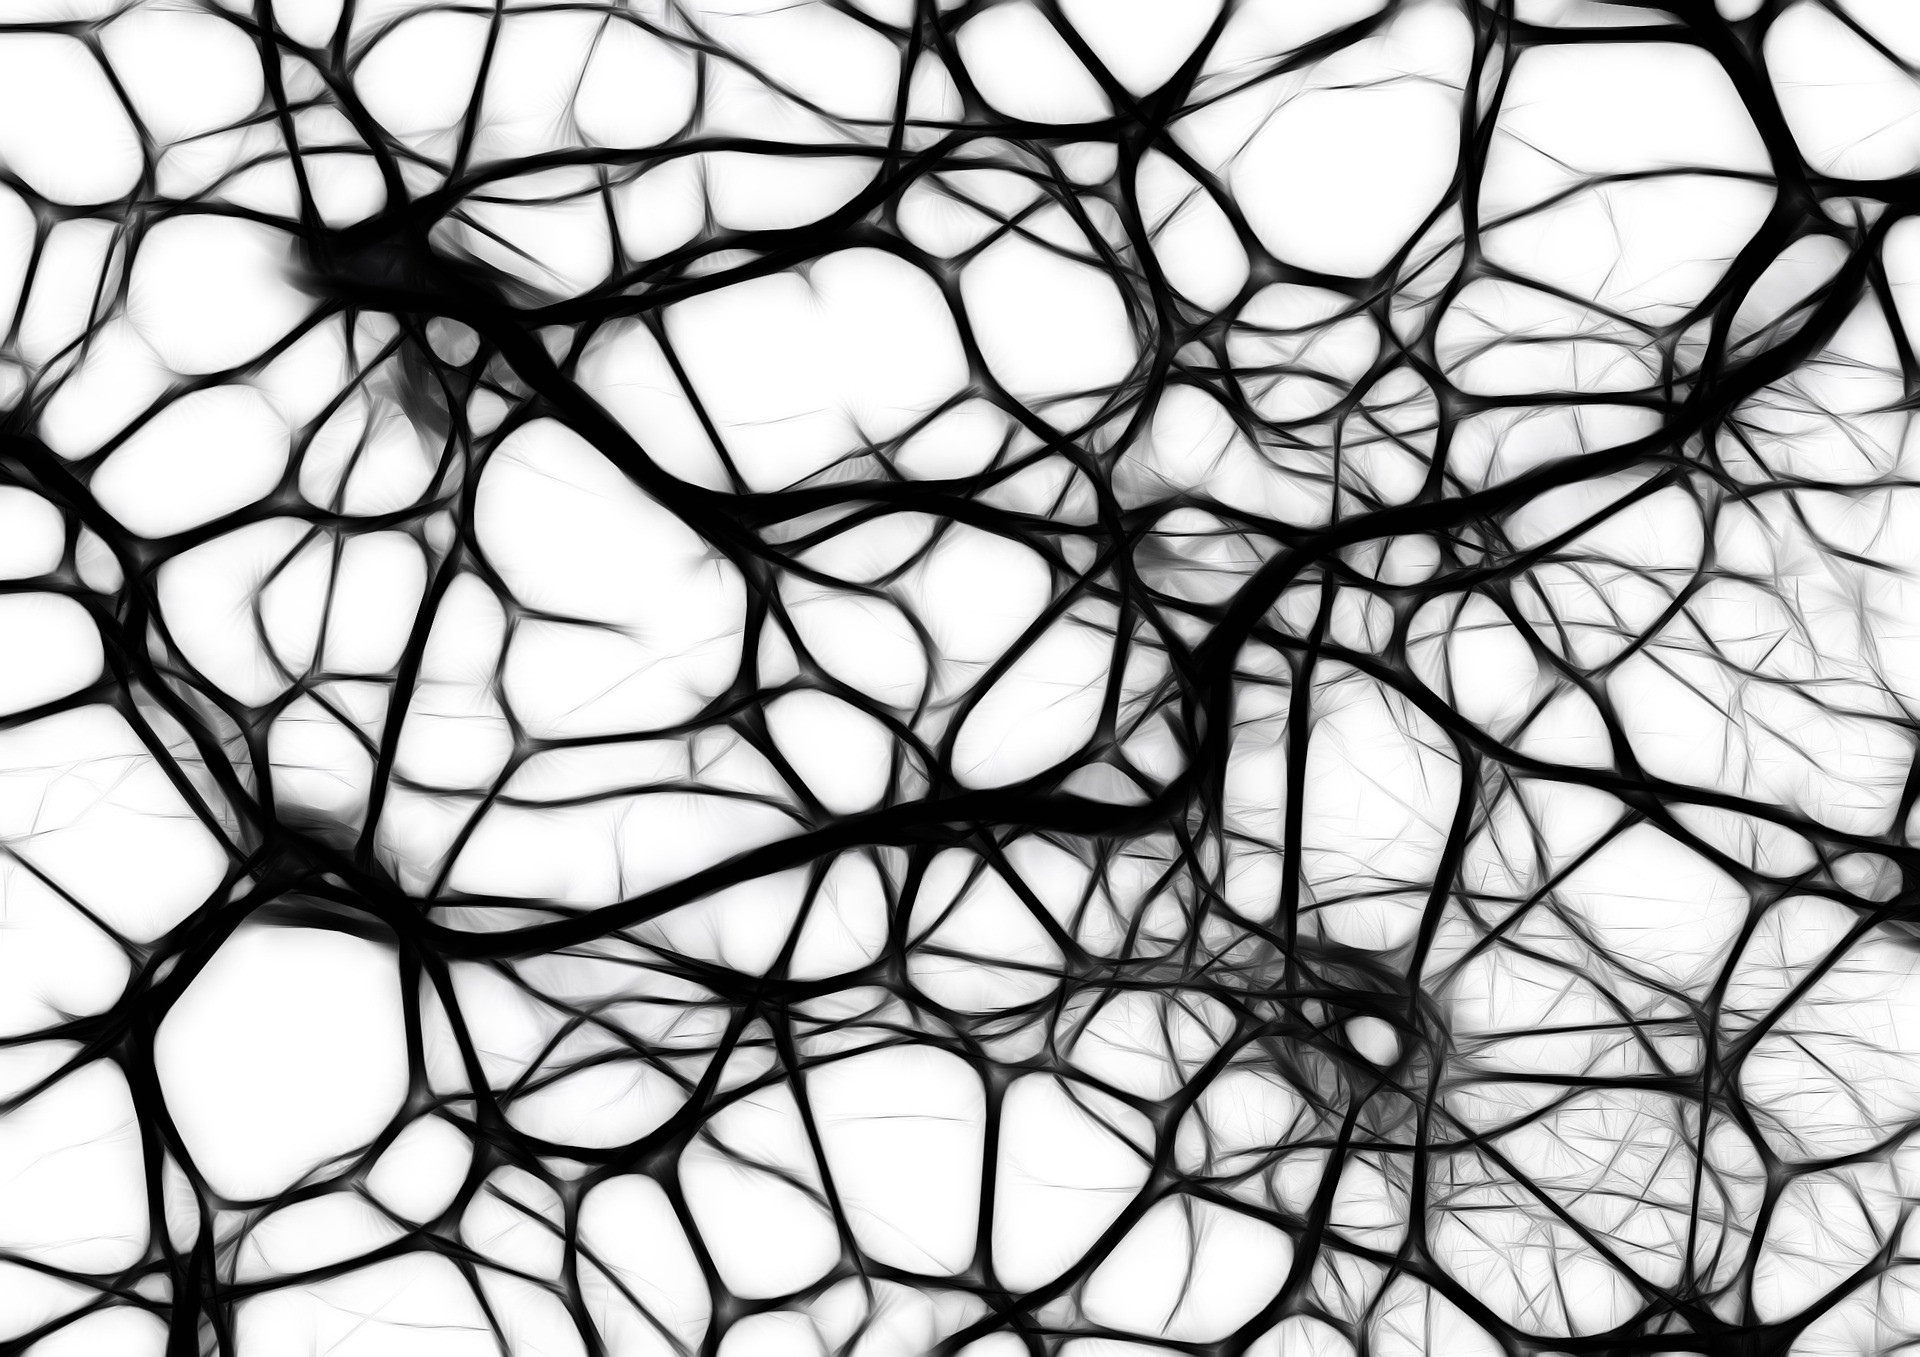 nöronlar arasındaki bağlantı